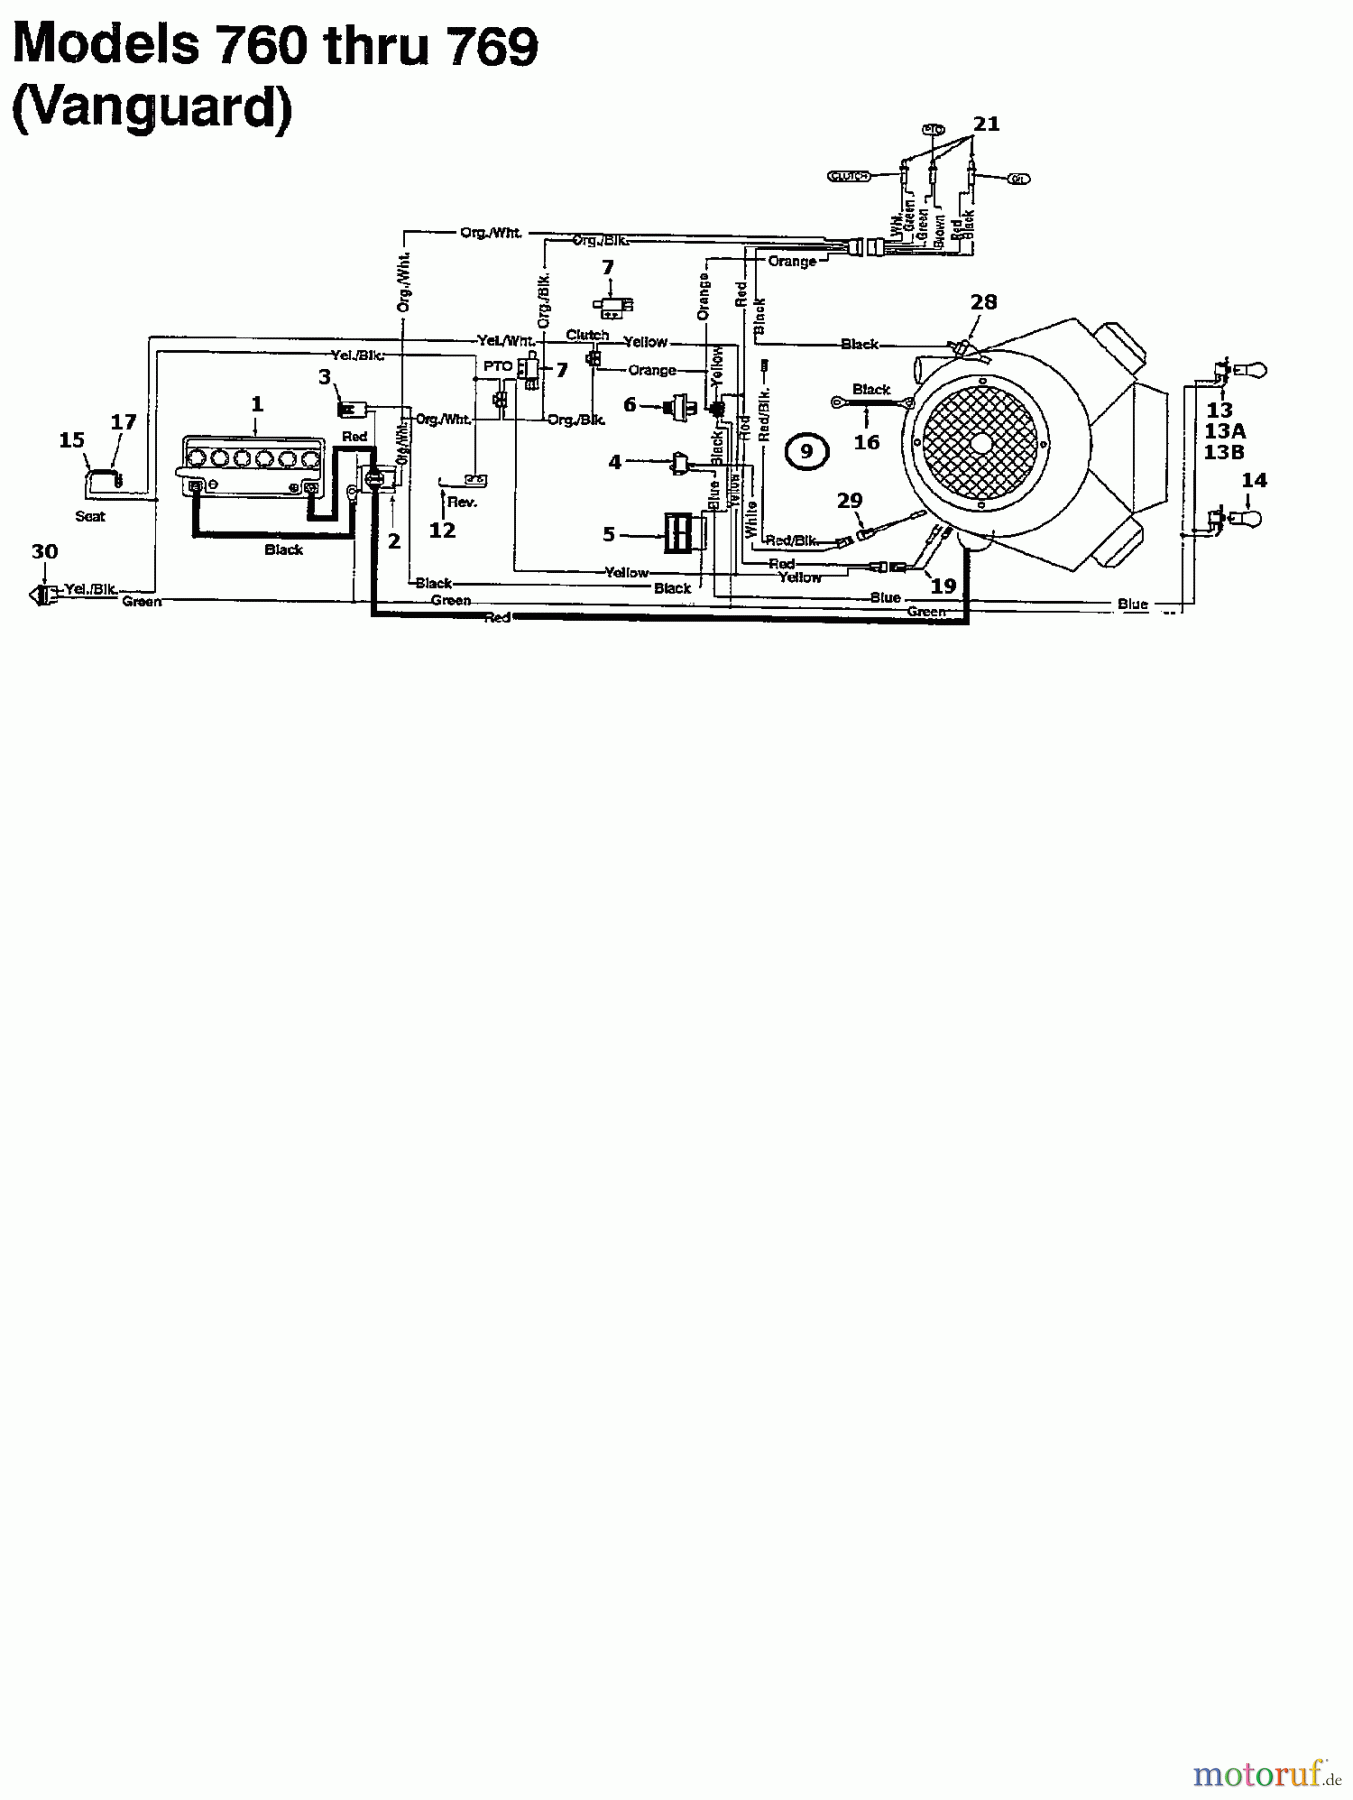  MTD Lawn tractors K 765 N 135N766N678  (1995) Wiring diagram Vanguard